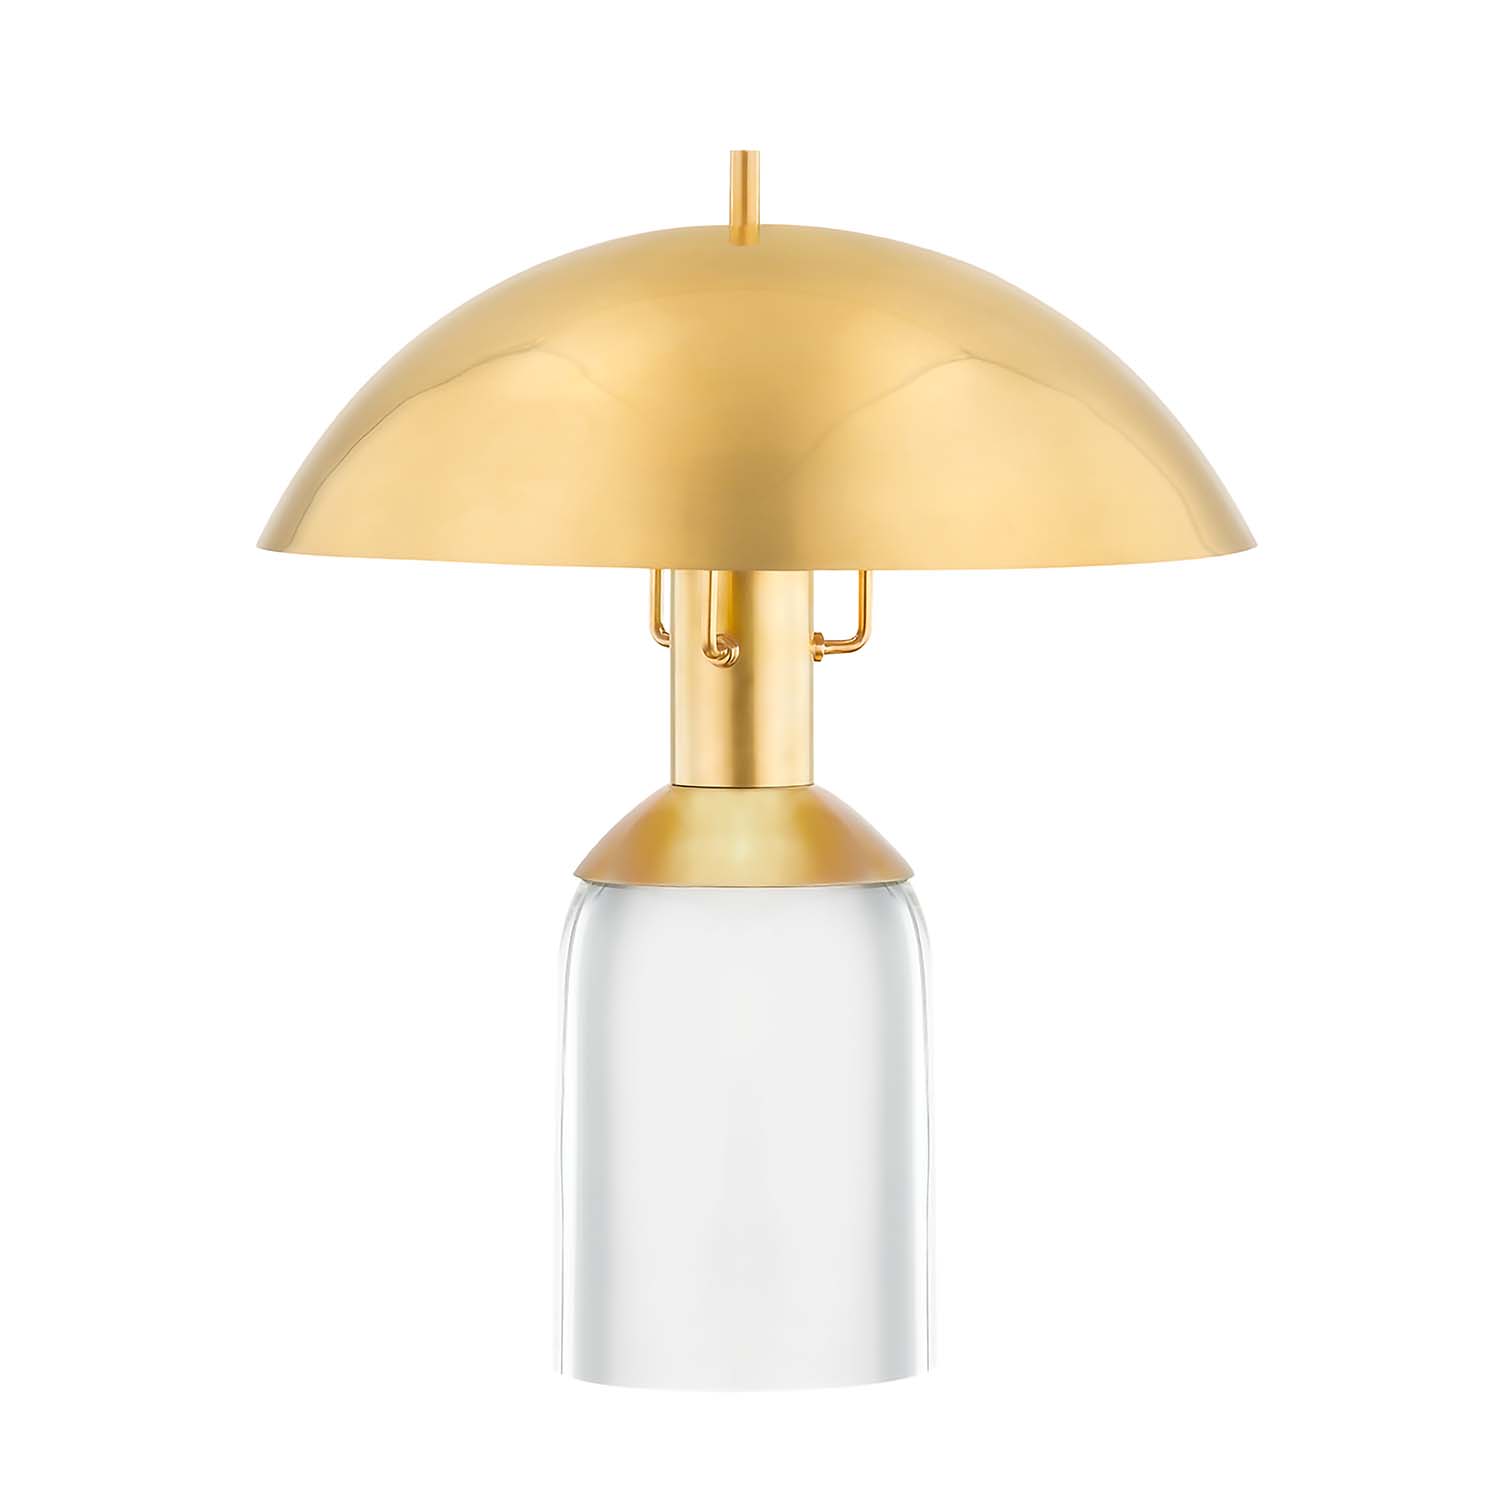 BAYSIDE - Glass brass table lamp for designer living room